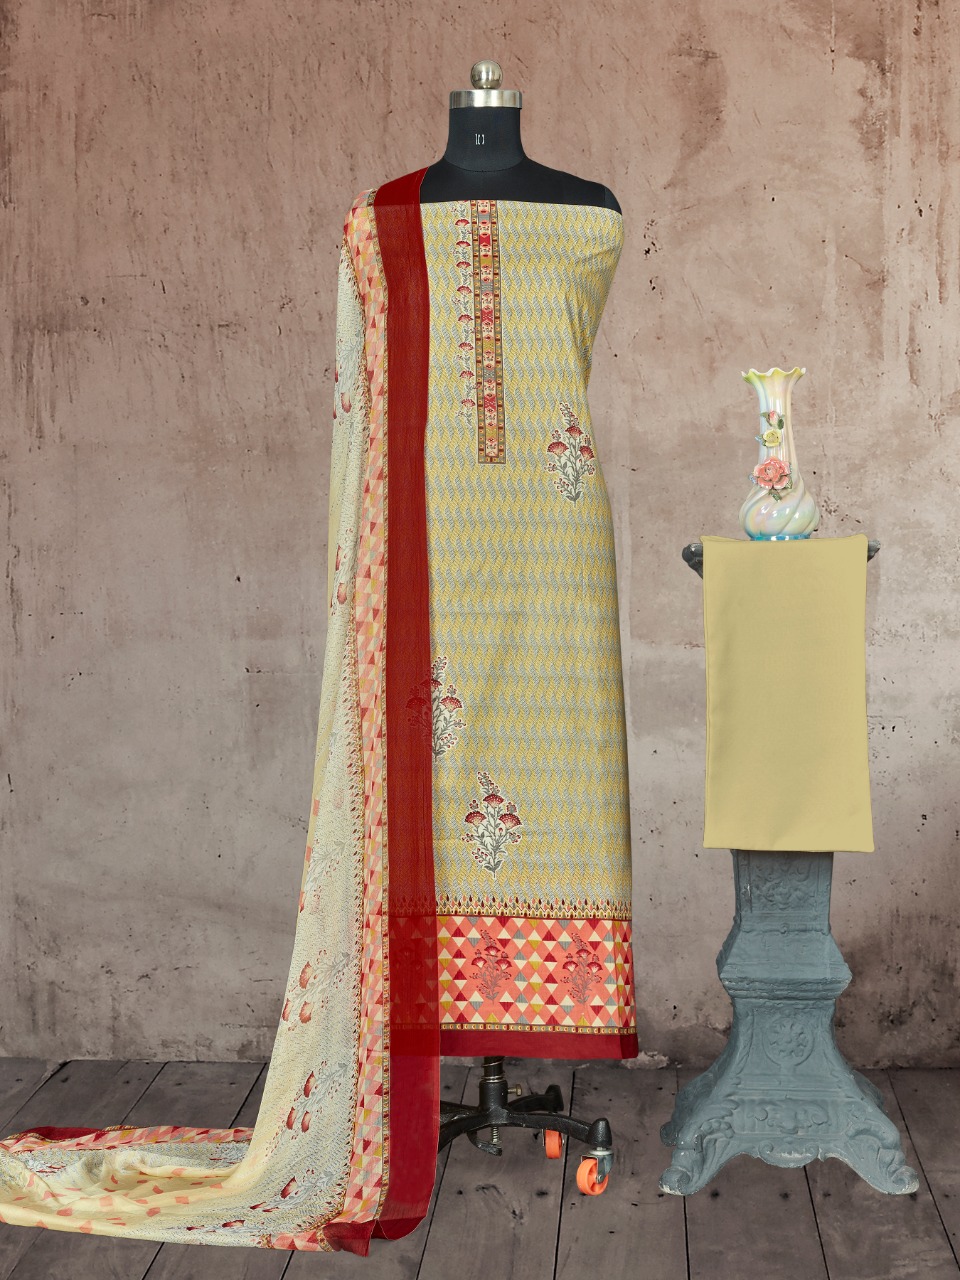 bipson  heritage 1418 cotton exclusive print and colours salwar suit colour set